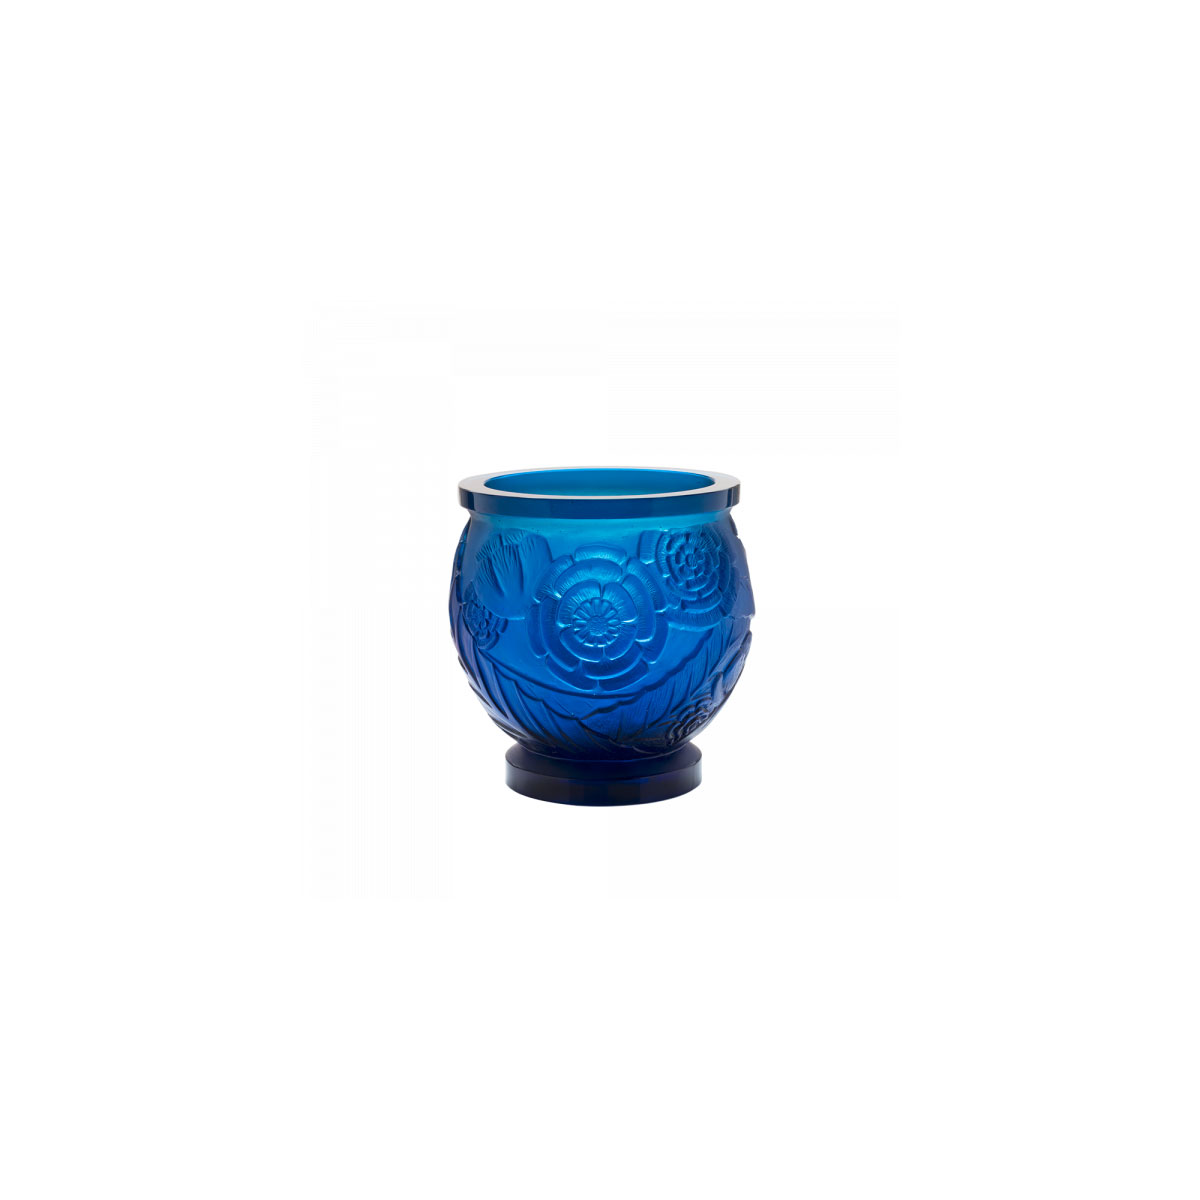 Daum 8.9" Empreinte Vase in Blue, Limited Edition